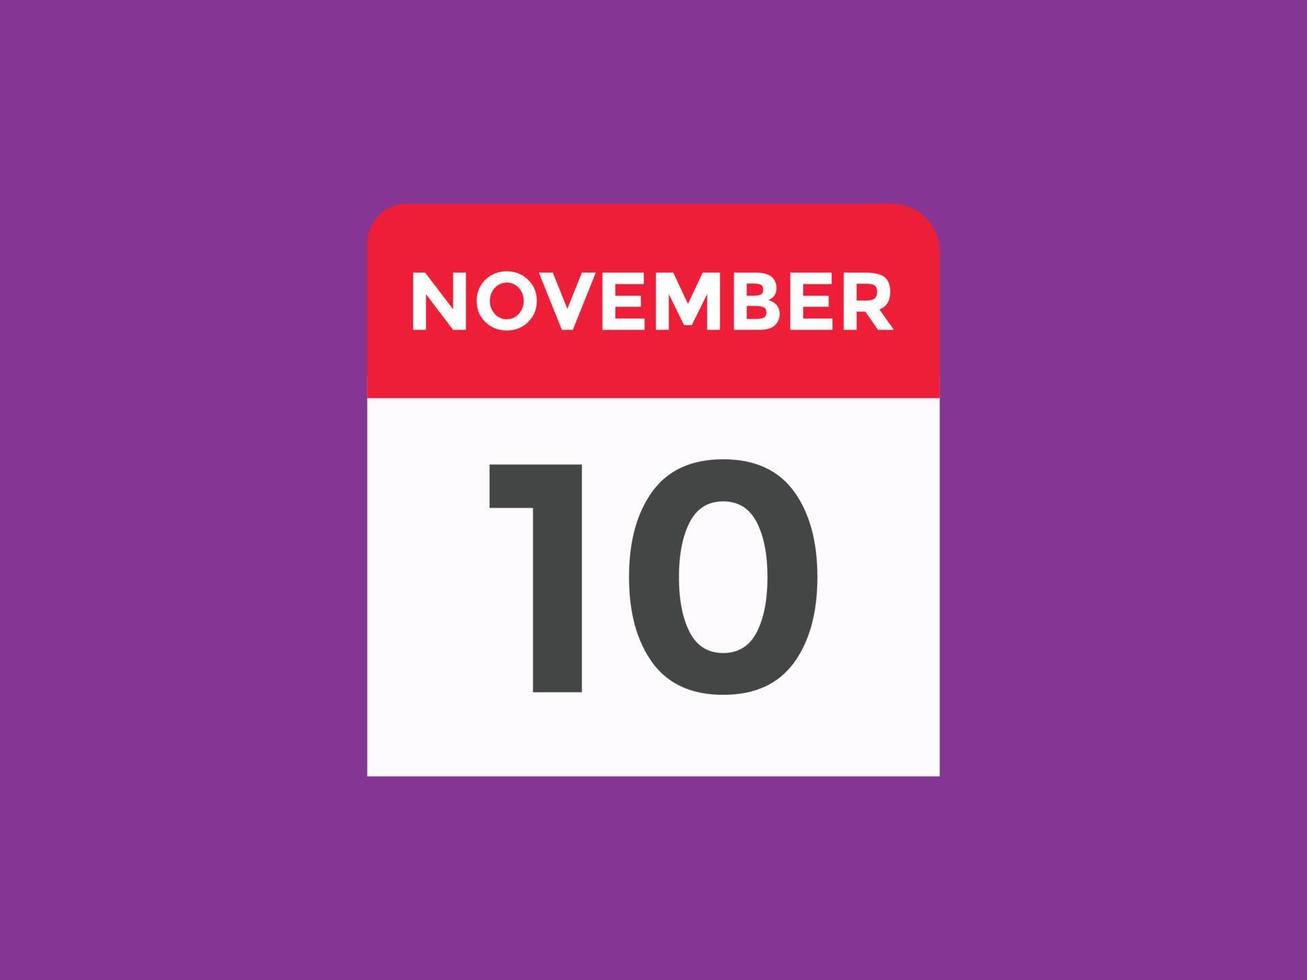 november 10 kalender påminnelse. 10:e november dagligen kalender ikon mall. kalender 10:e november ikon design mall. vektor illustration